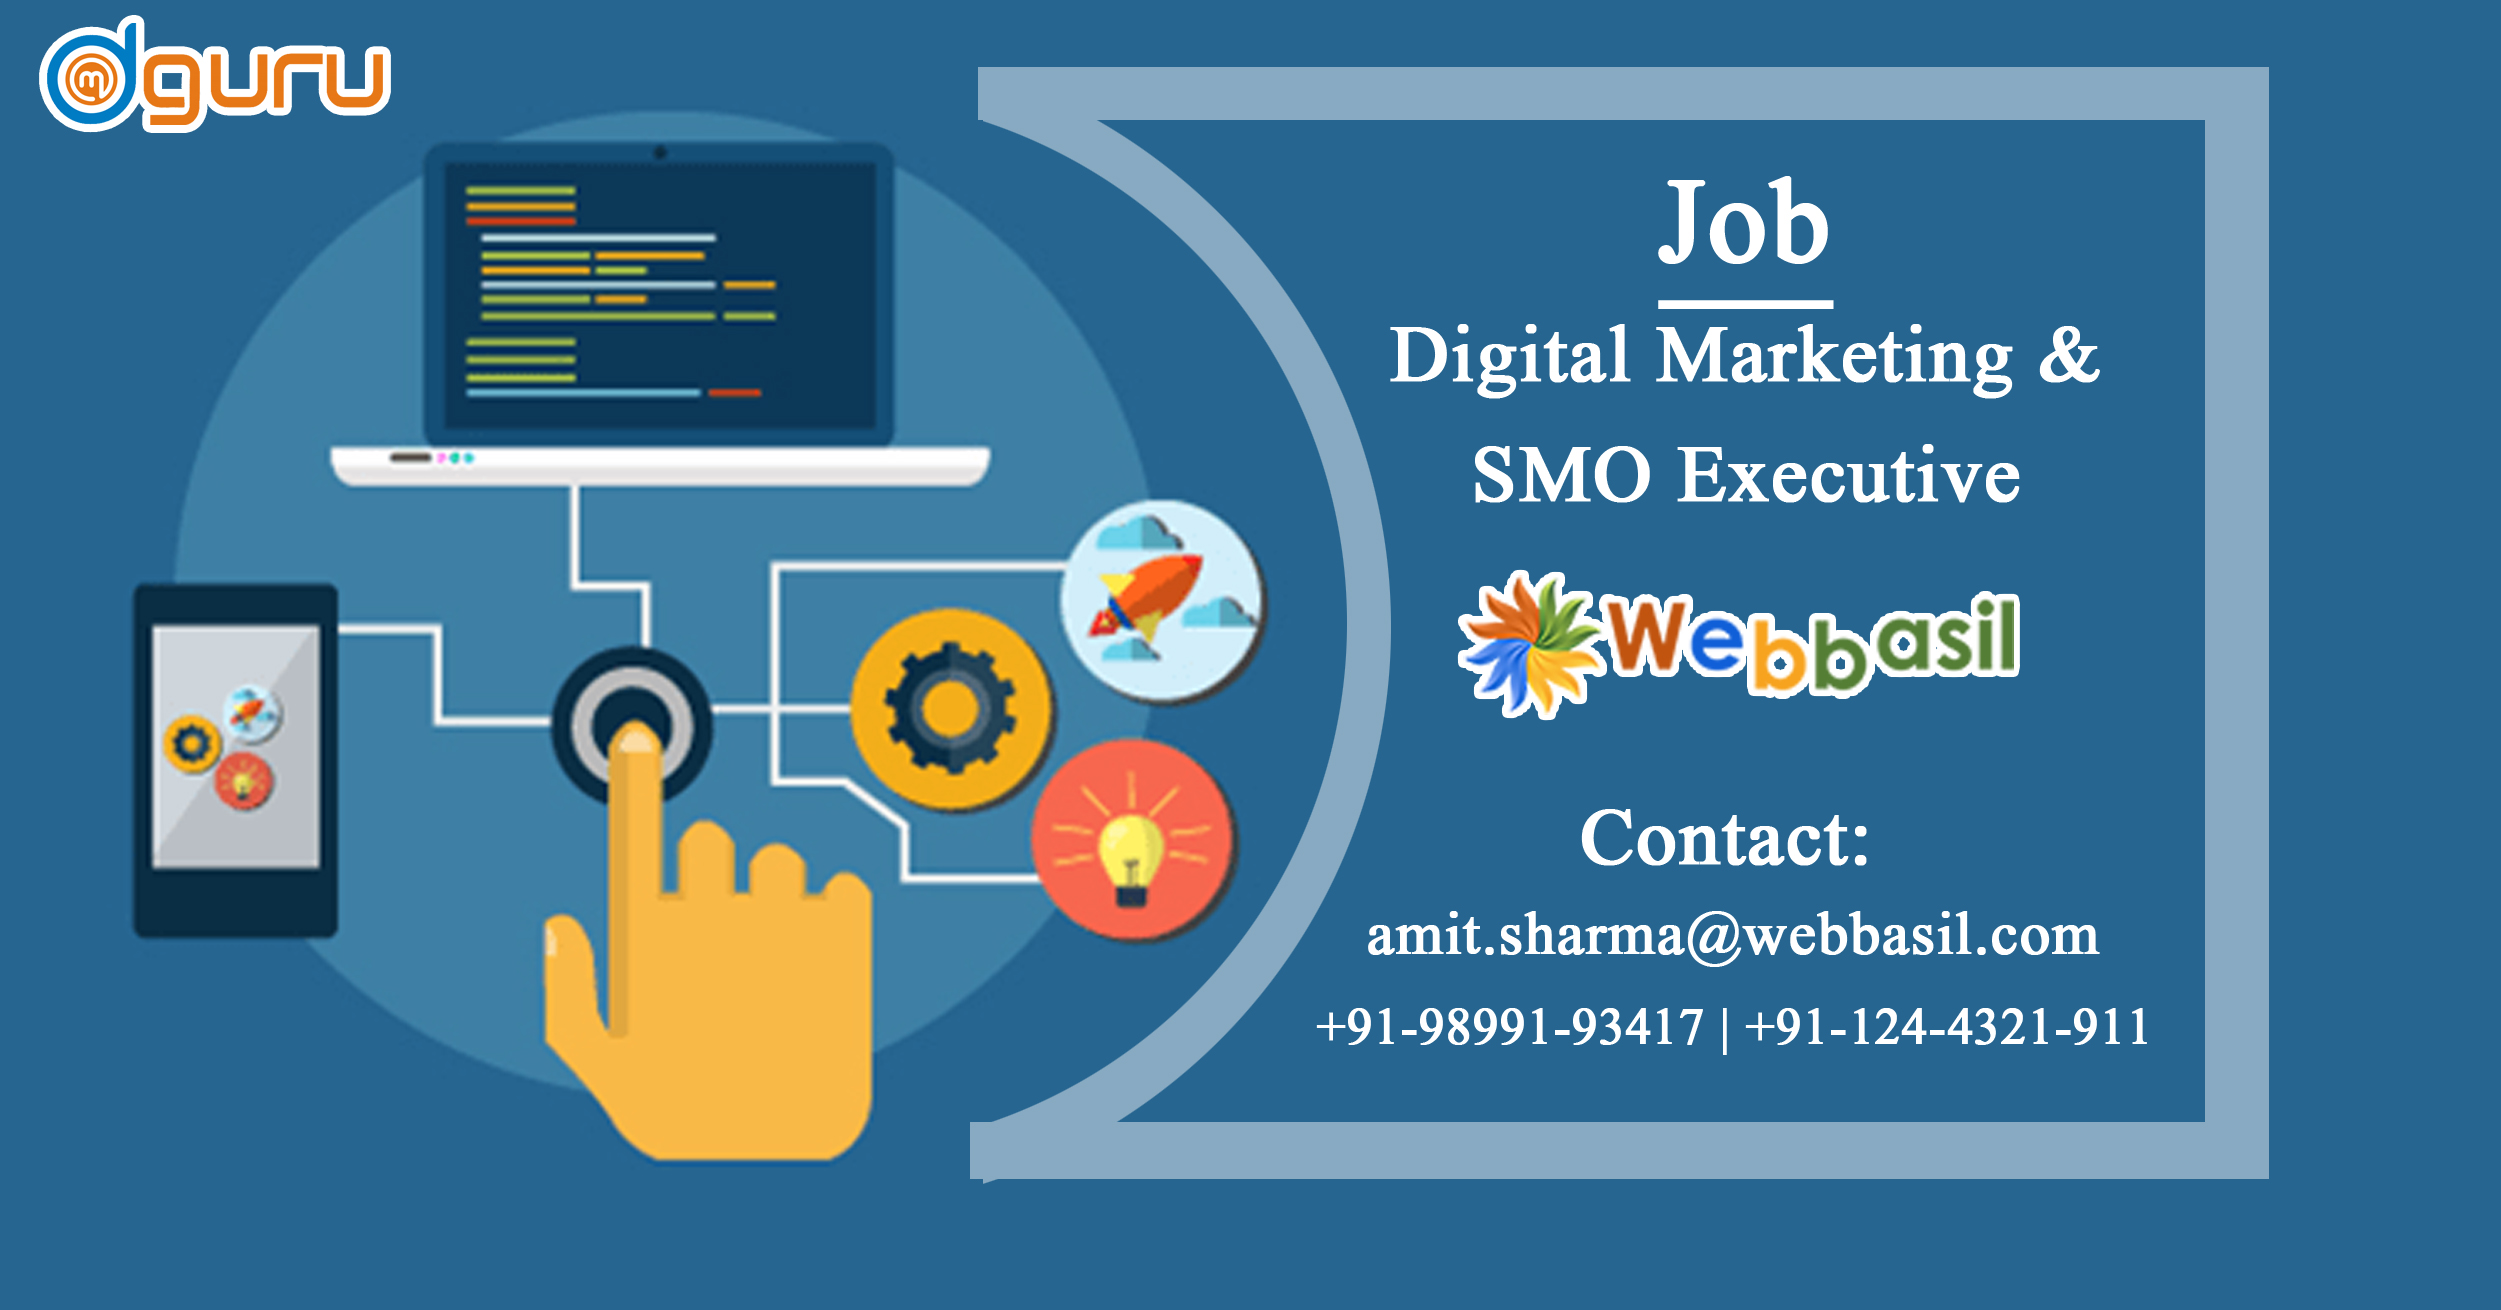 Digital Marketing/SMO Job at Webbasil Gurgaon, India